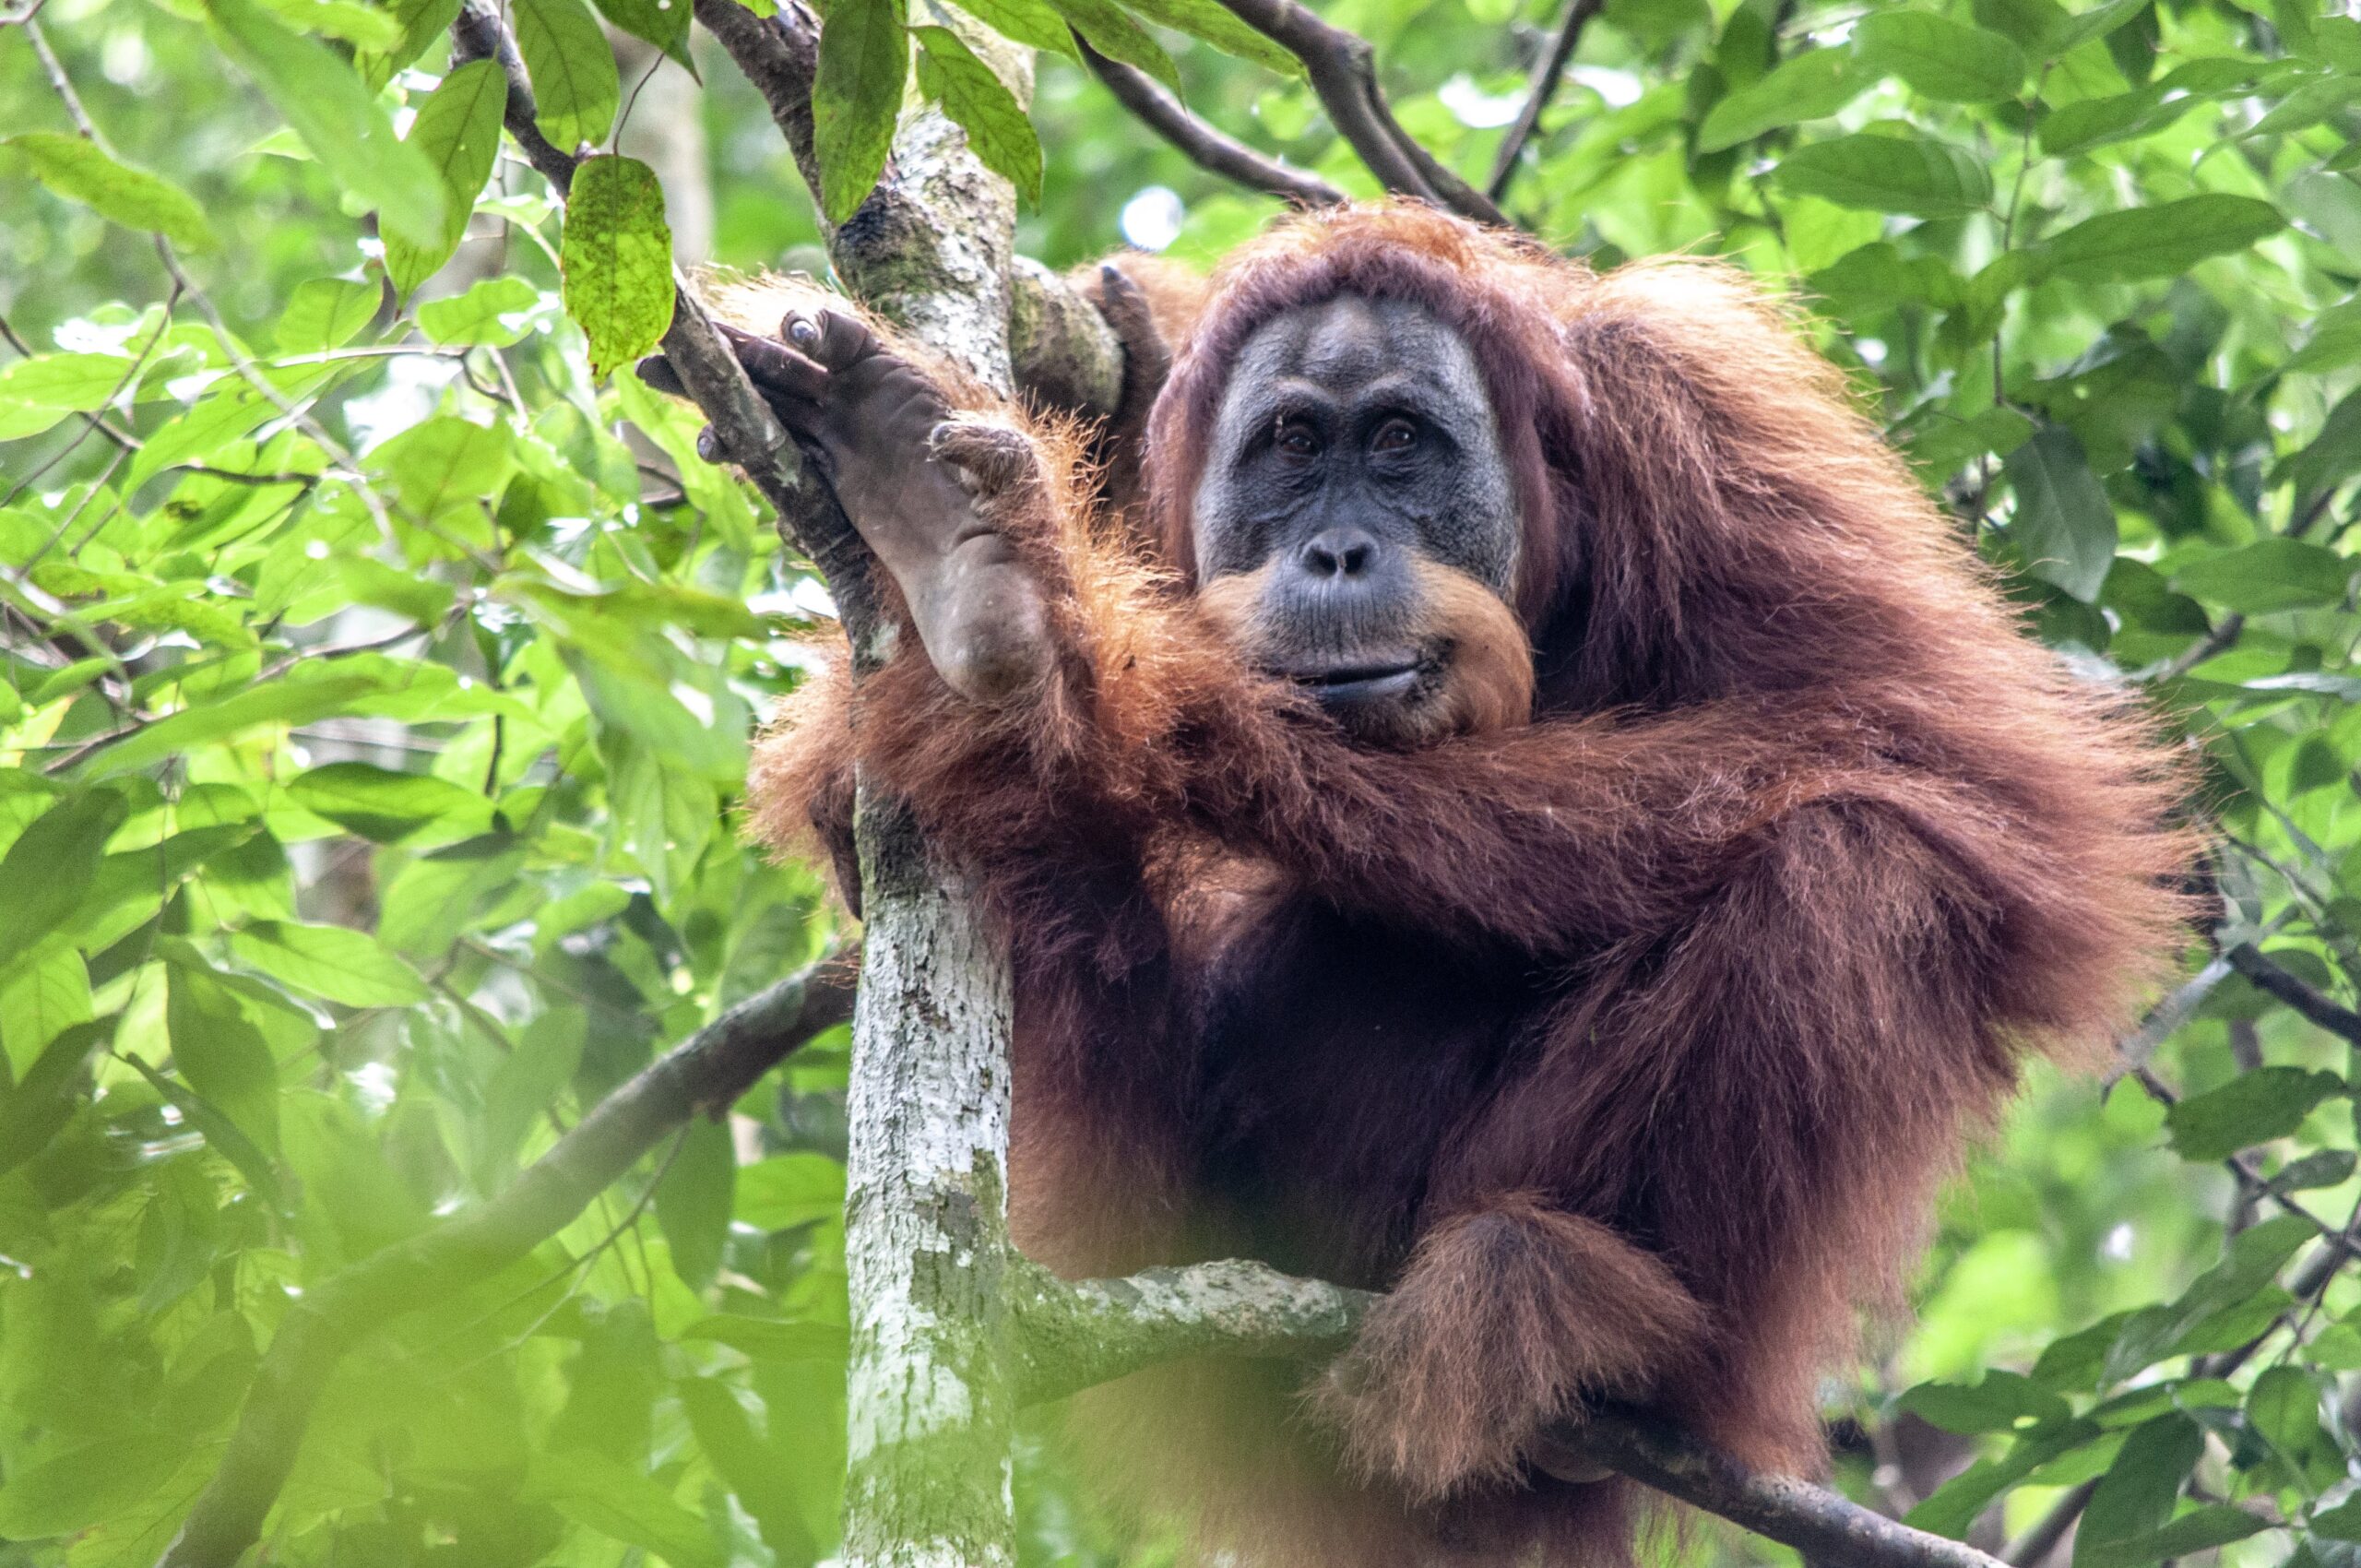 Orangutan trekking